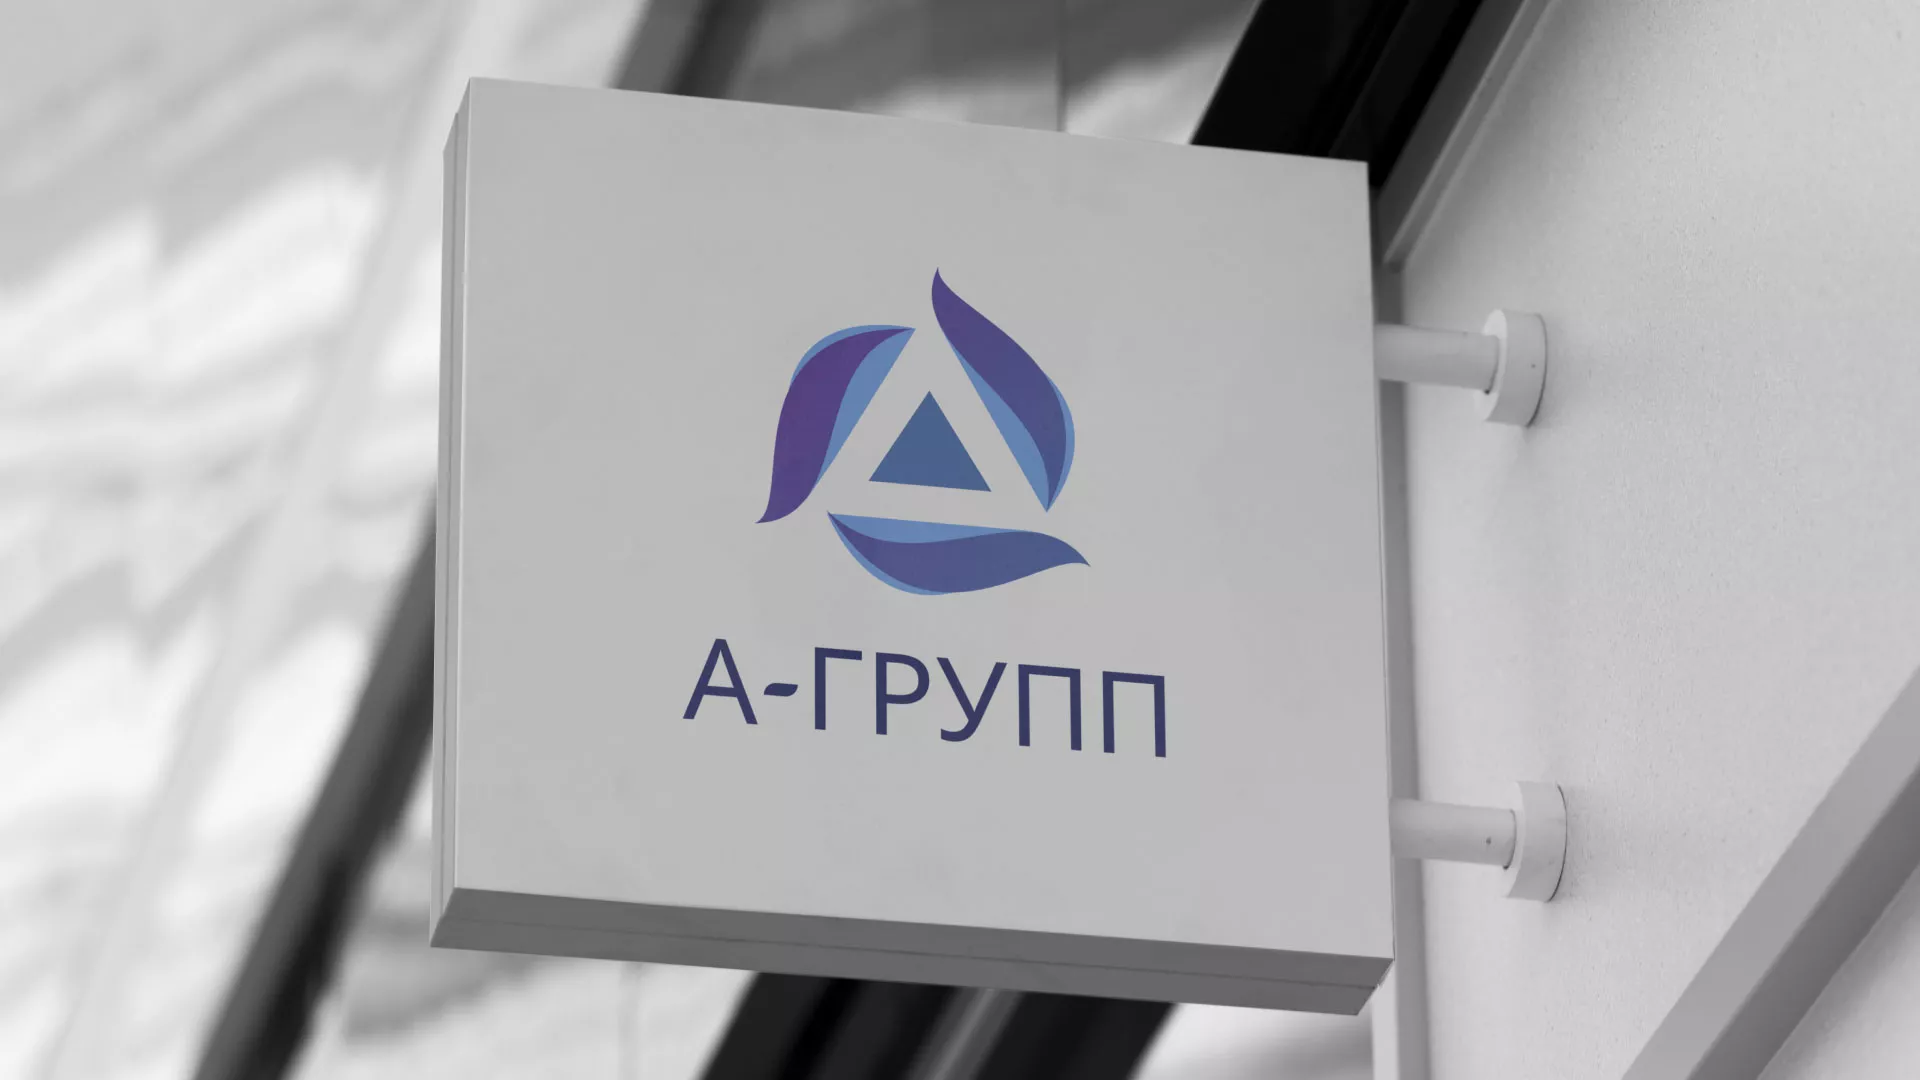 Создание логотипа компании «А-ГРУПП» в Петропавловске-Камчатском